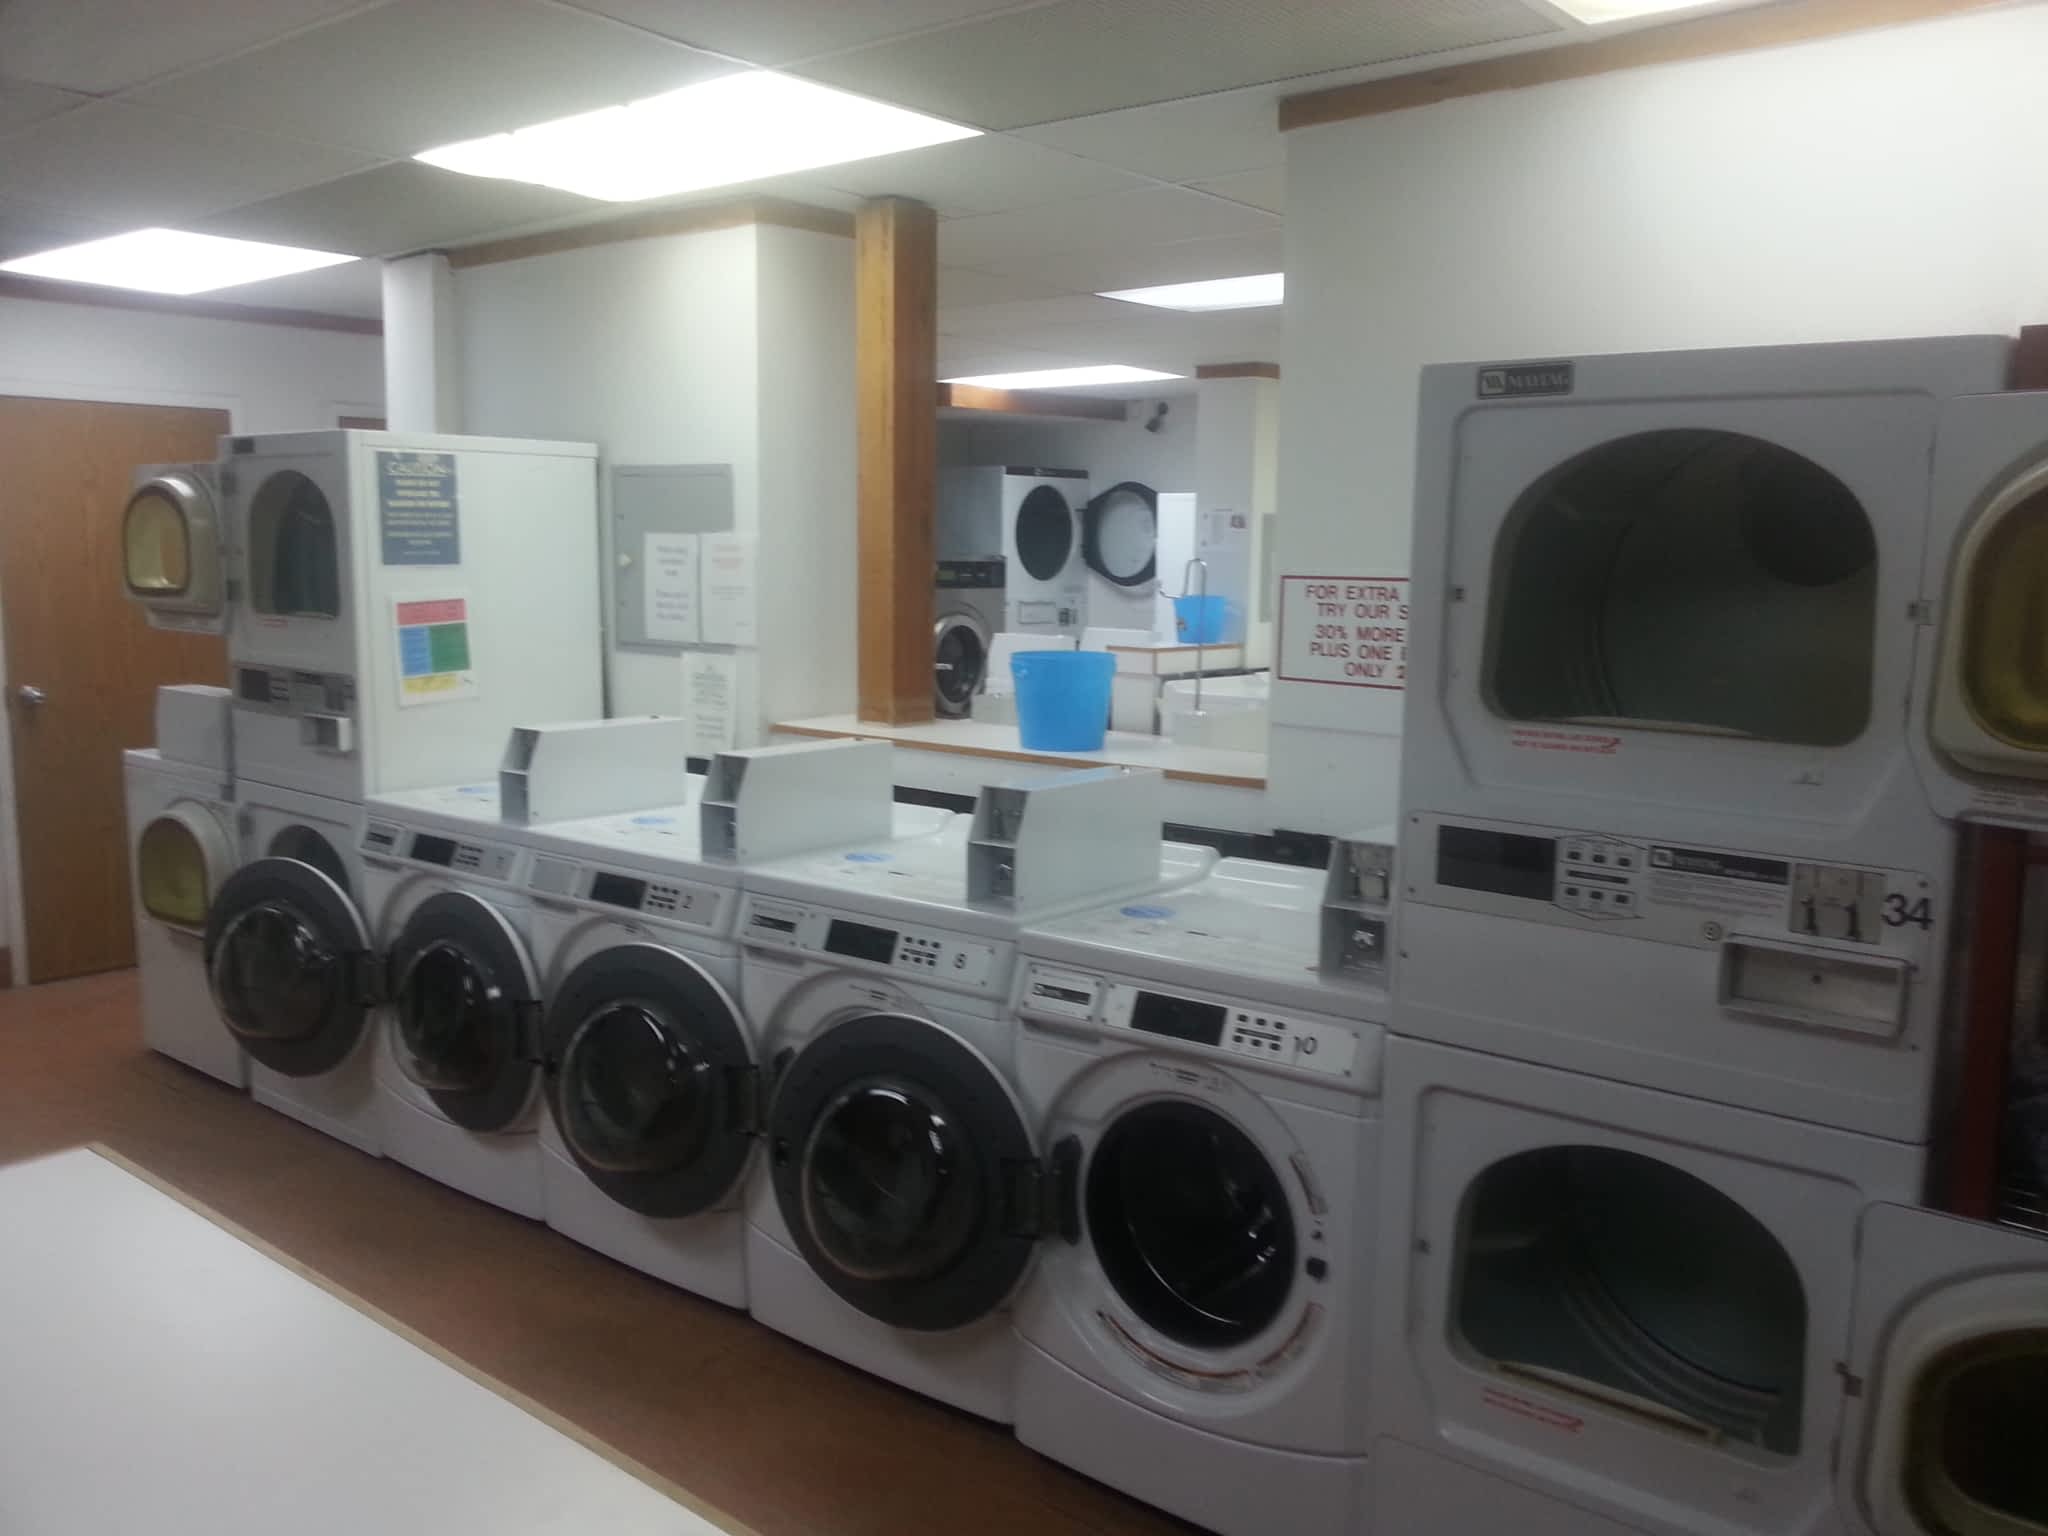 photo Marion Plaza Laundry Centre